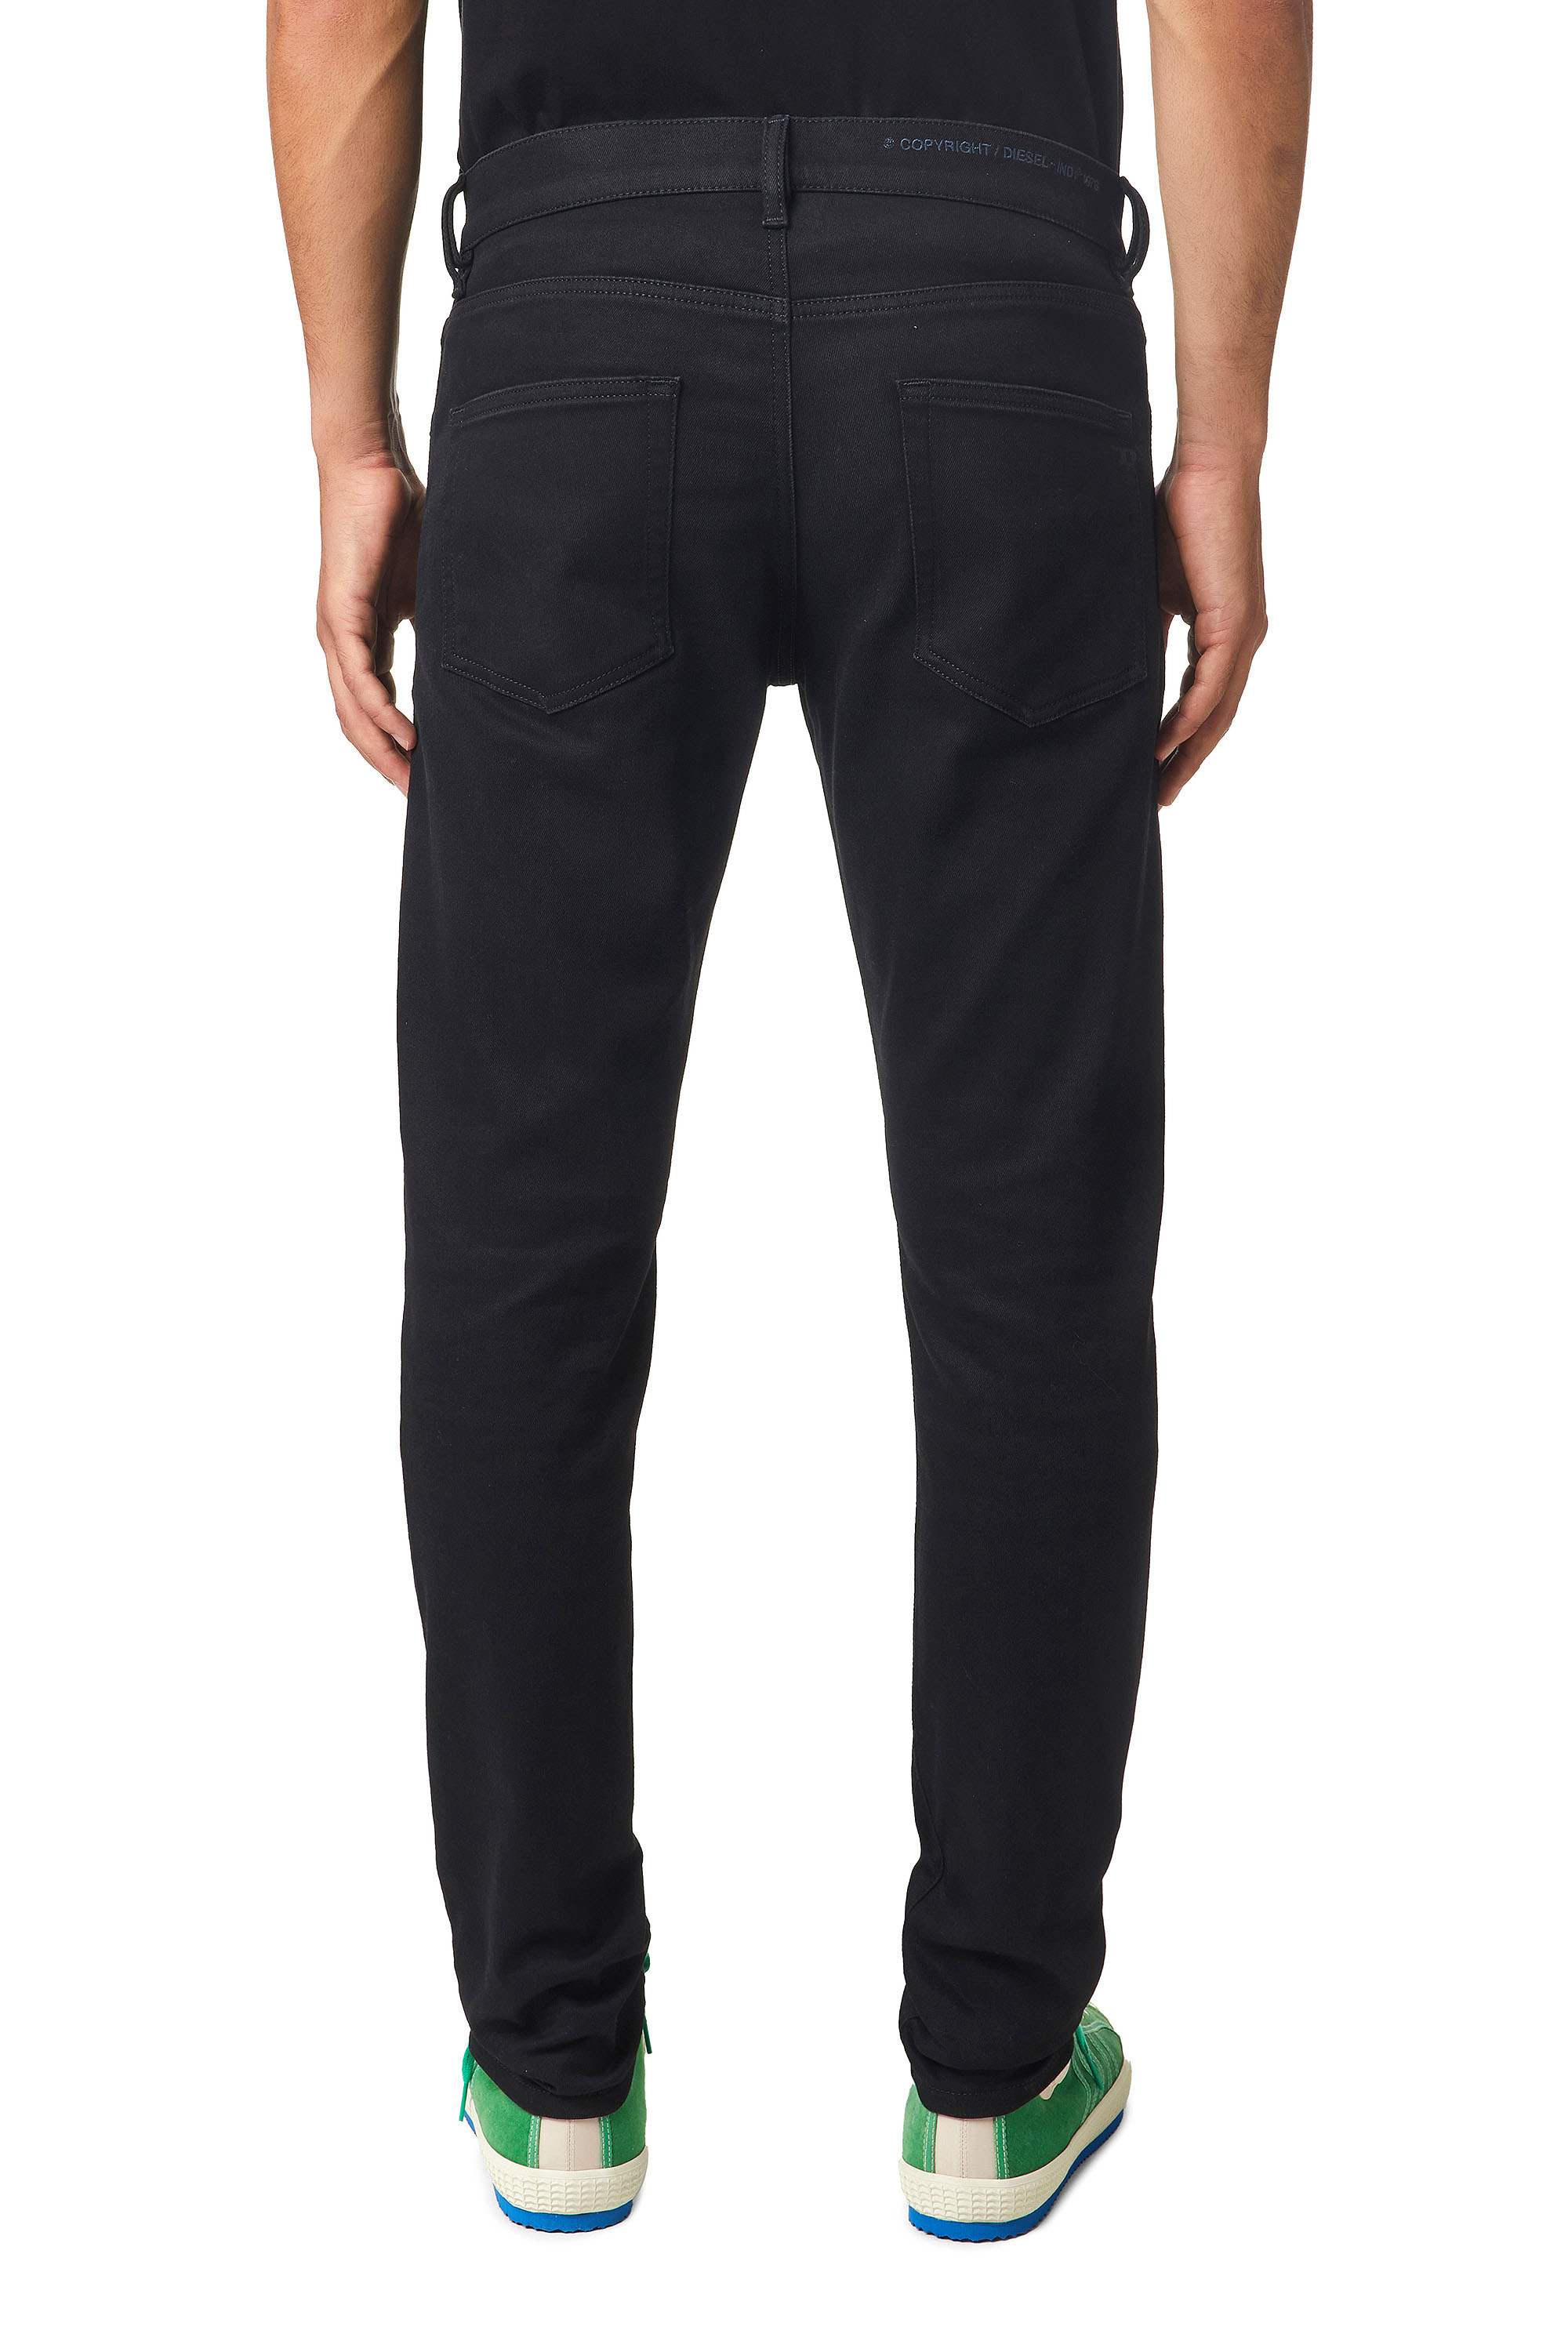 Diesel - D-Strukt Slim JoggJeans® Z9A29, Black/Dark grey - Image 2